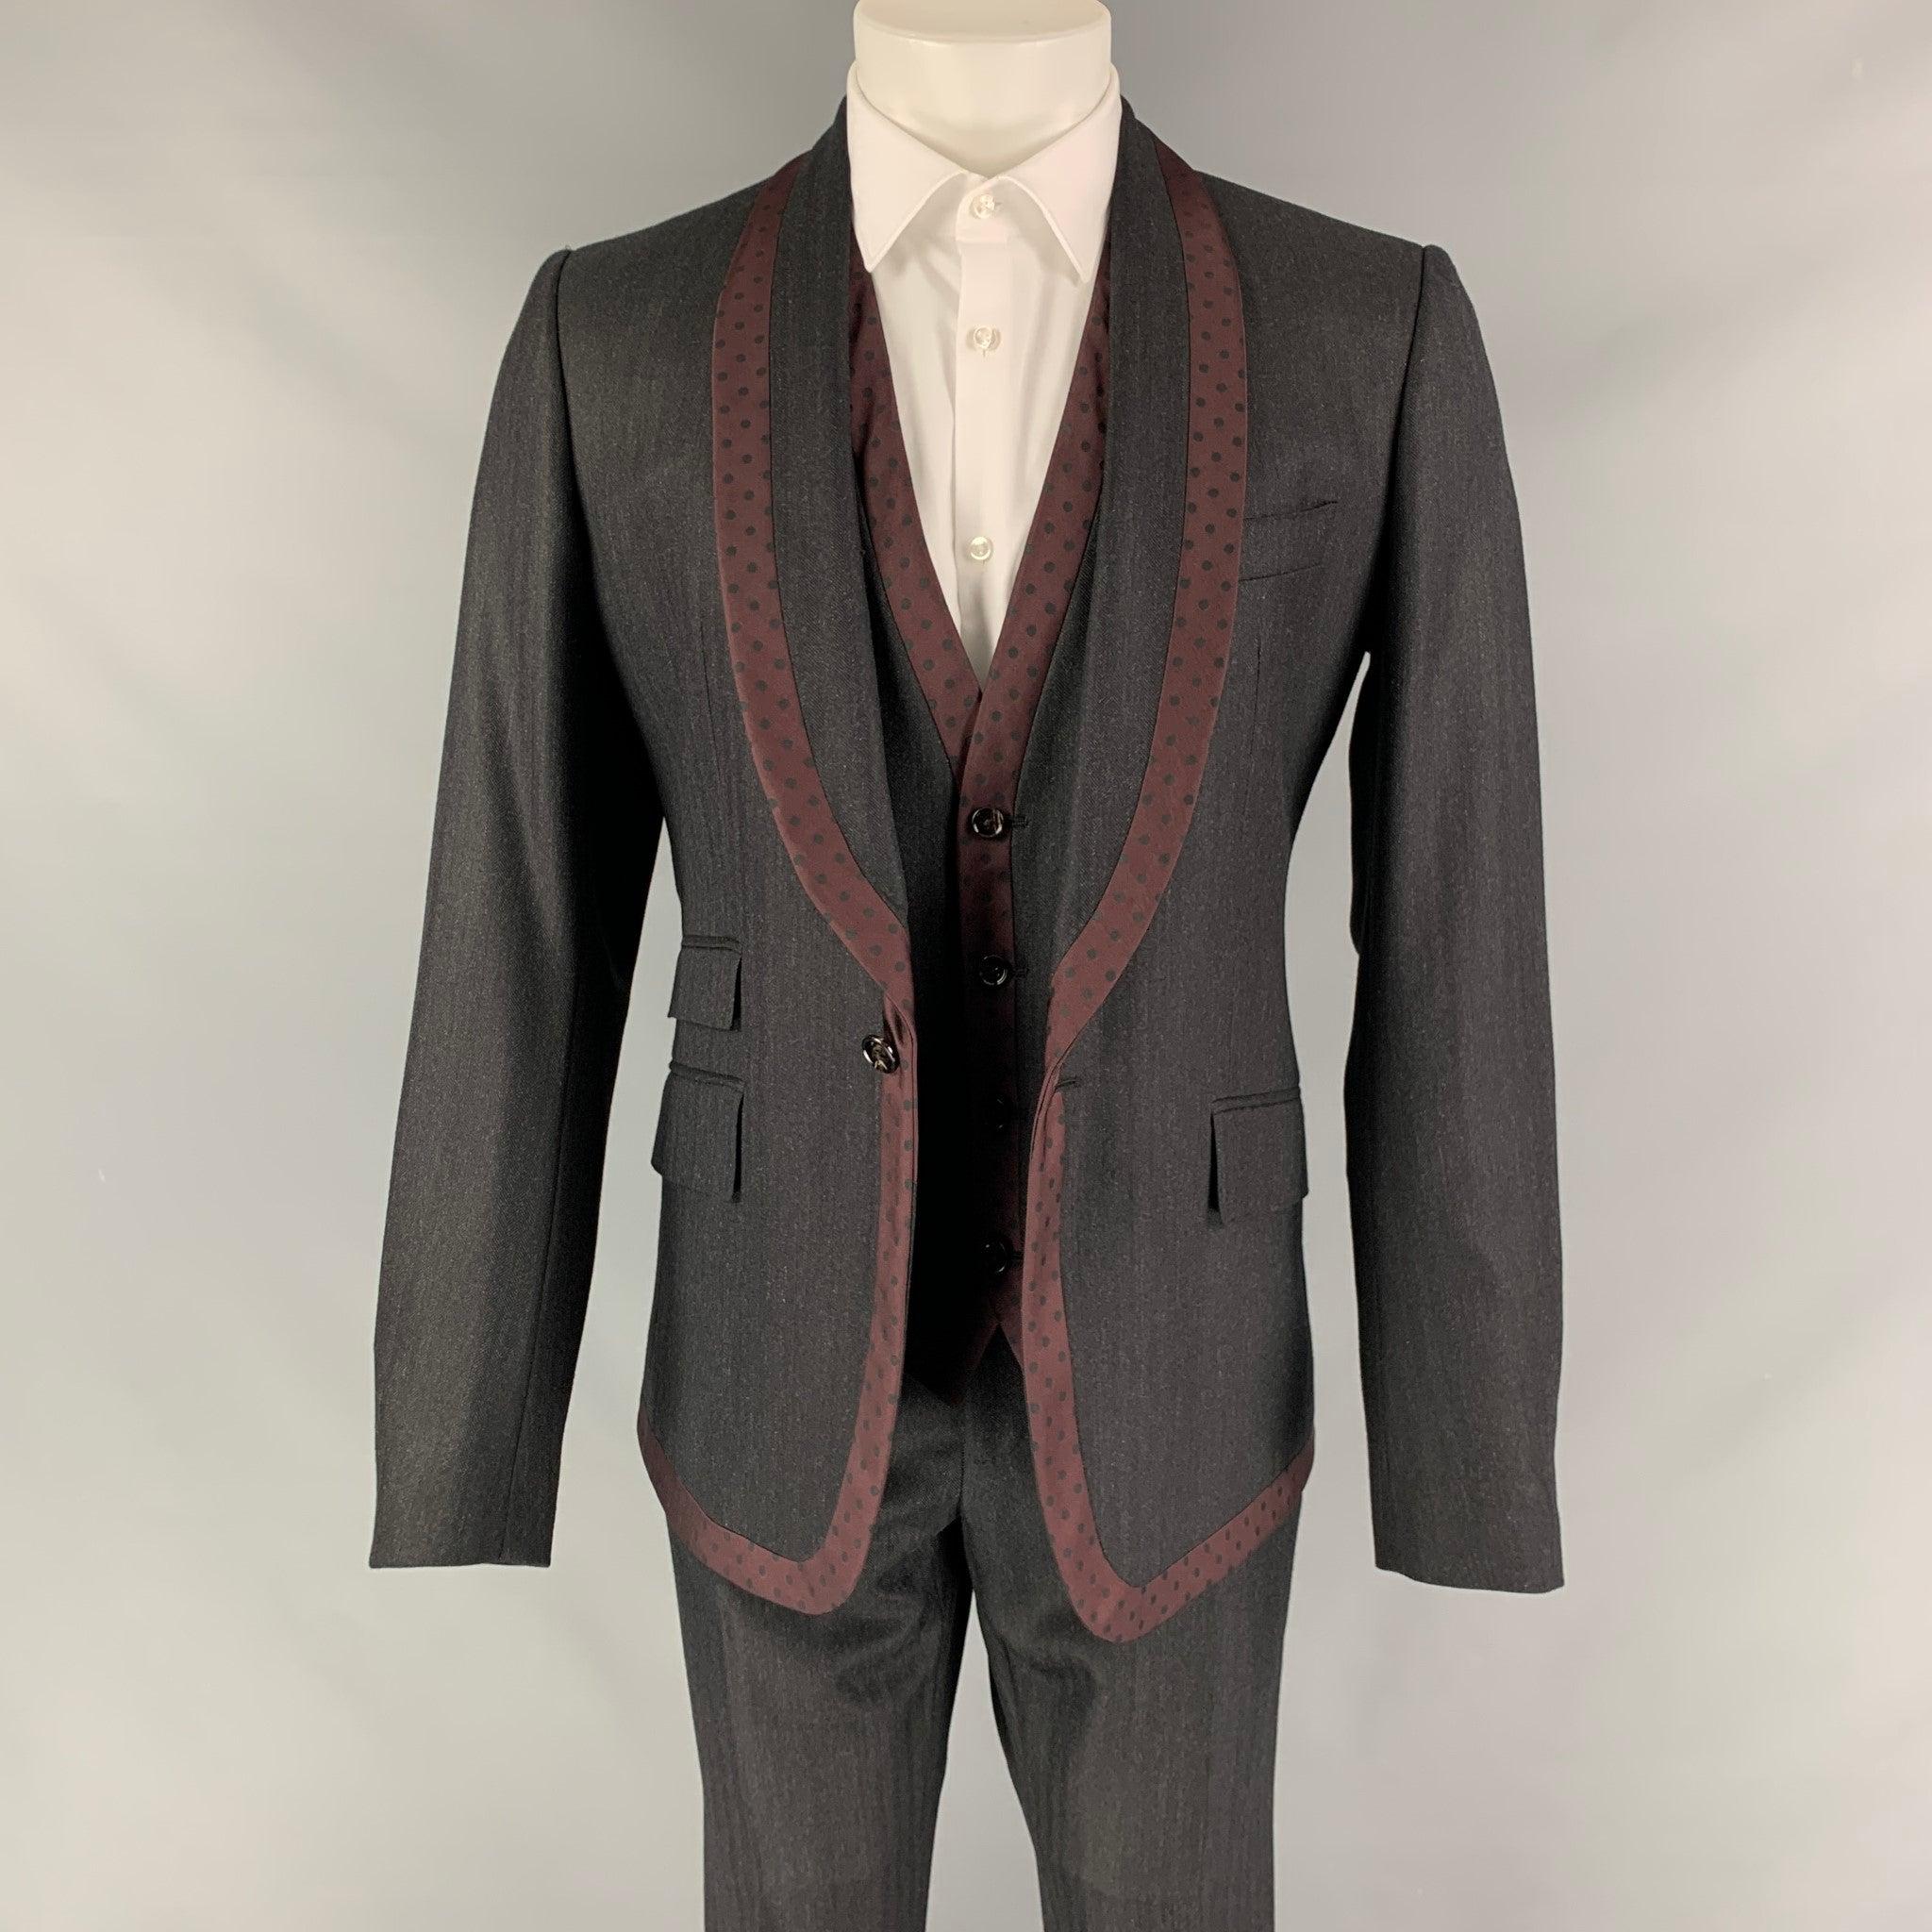 Le costume 3 pièces DOLCE & GABBANA est en laine vierge à pois gris et bordeaux, avec doublure intégrale. Il comprend un manteau sport à un seul boutonnage et col châle, un gilet assorti et un pantalon à devant plat. La taille et la longueur des